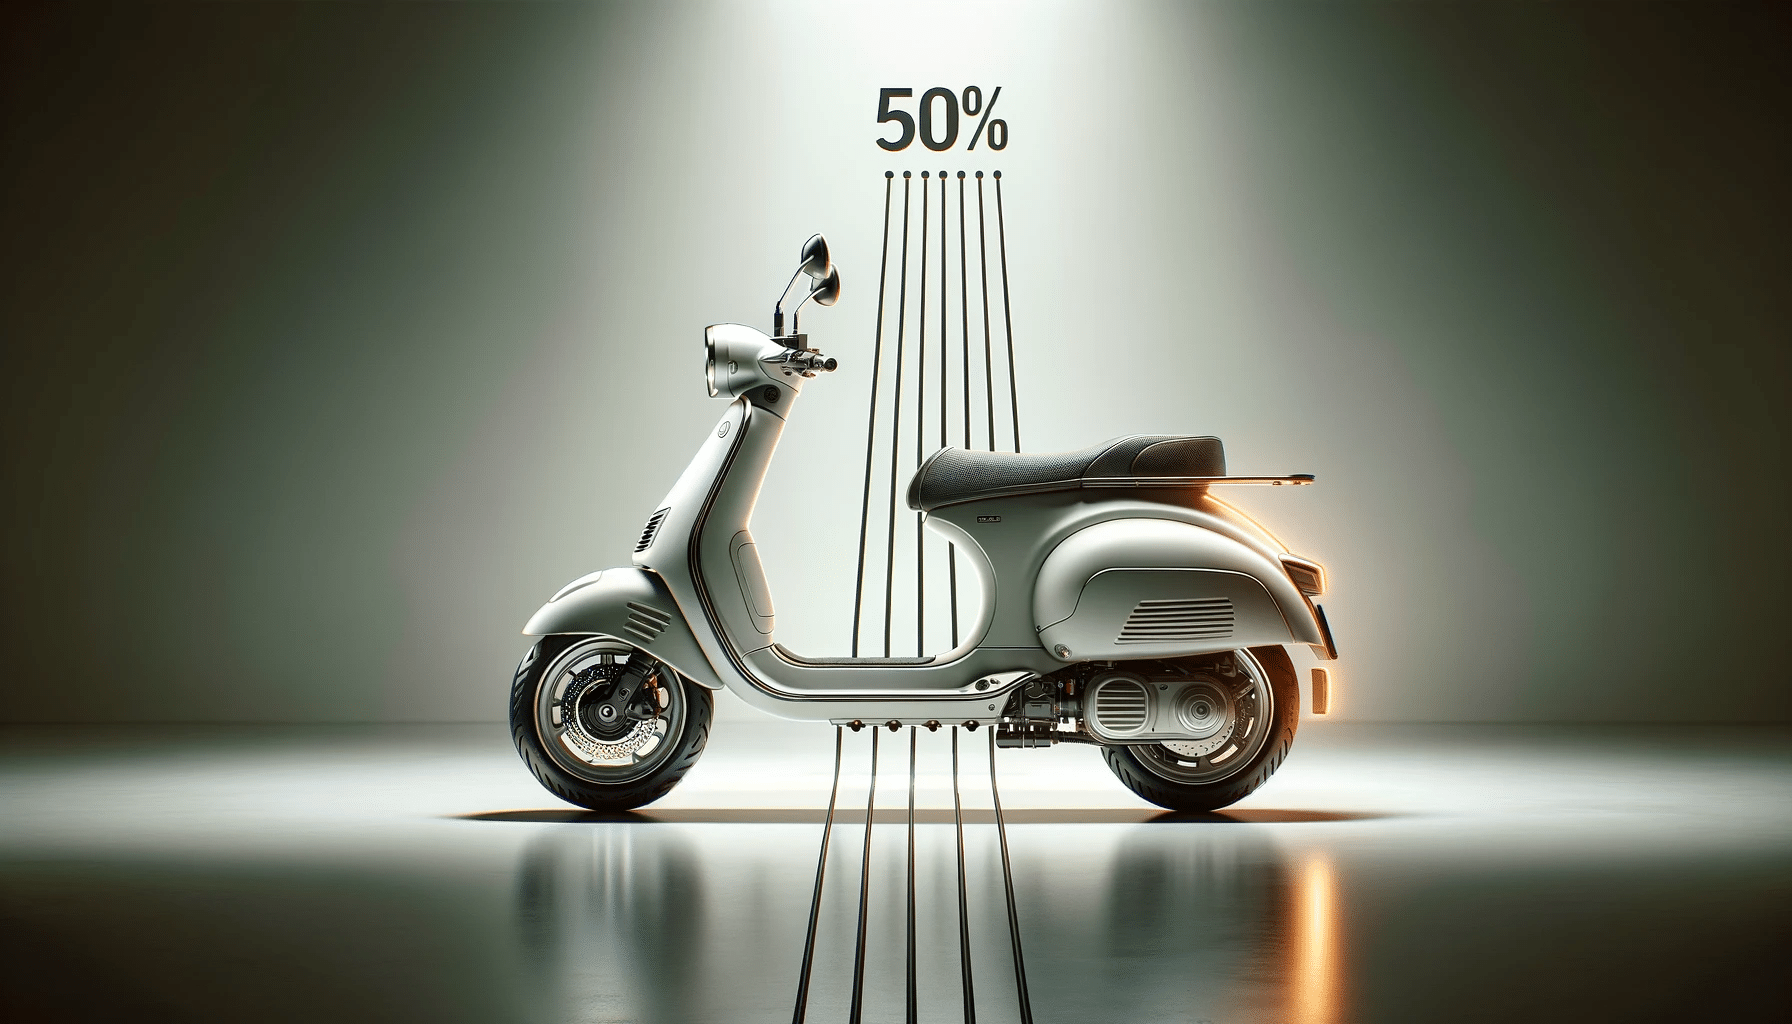 Achat options et accessoires pour scooter électrique